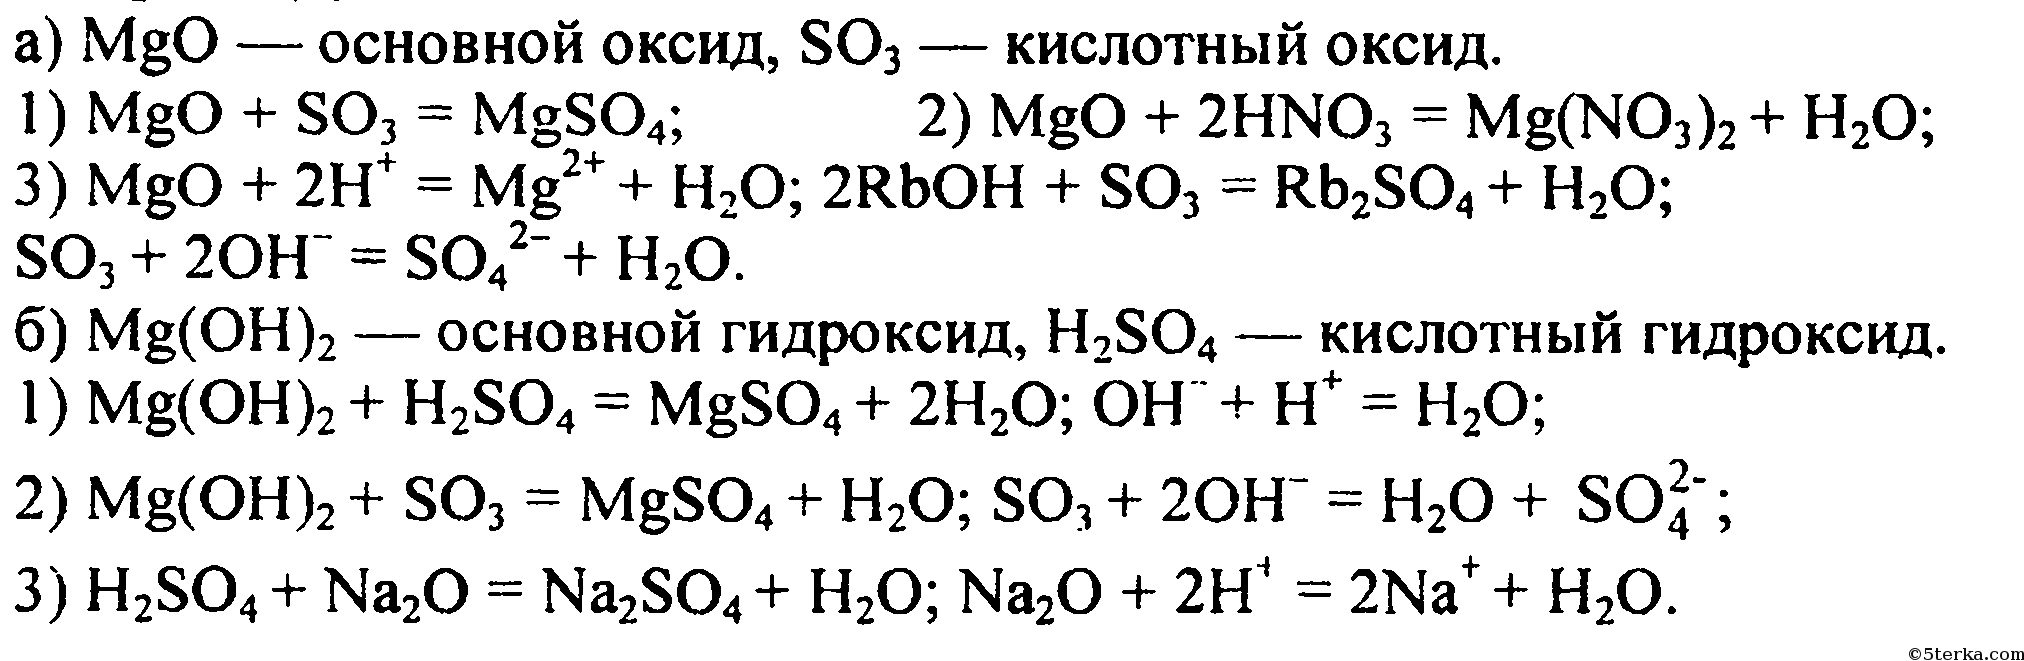 Хлороводородная кислота гидроксид магния. Уравнение химической реакции MGO И so3. Химические уравнения магний хлор 2. Цепочка реакций с магнием. MGO+h2so4 уравнение реакции.